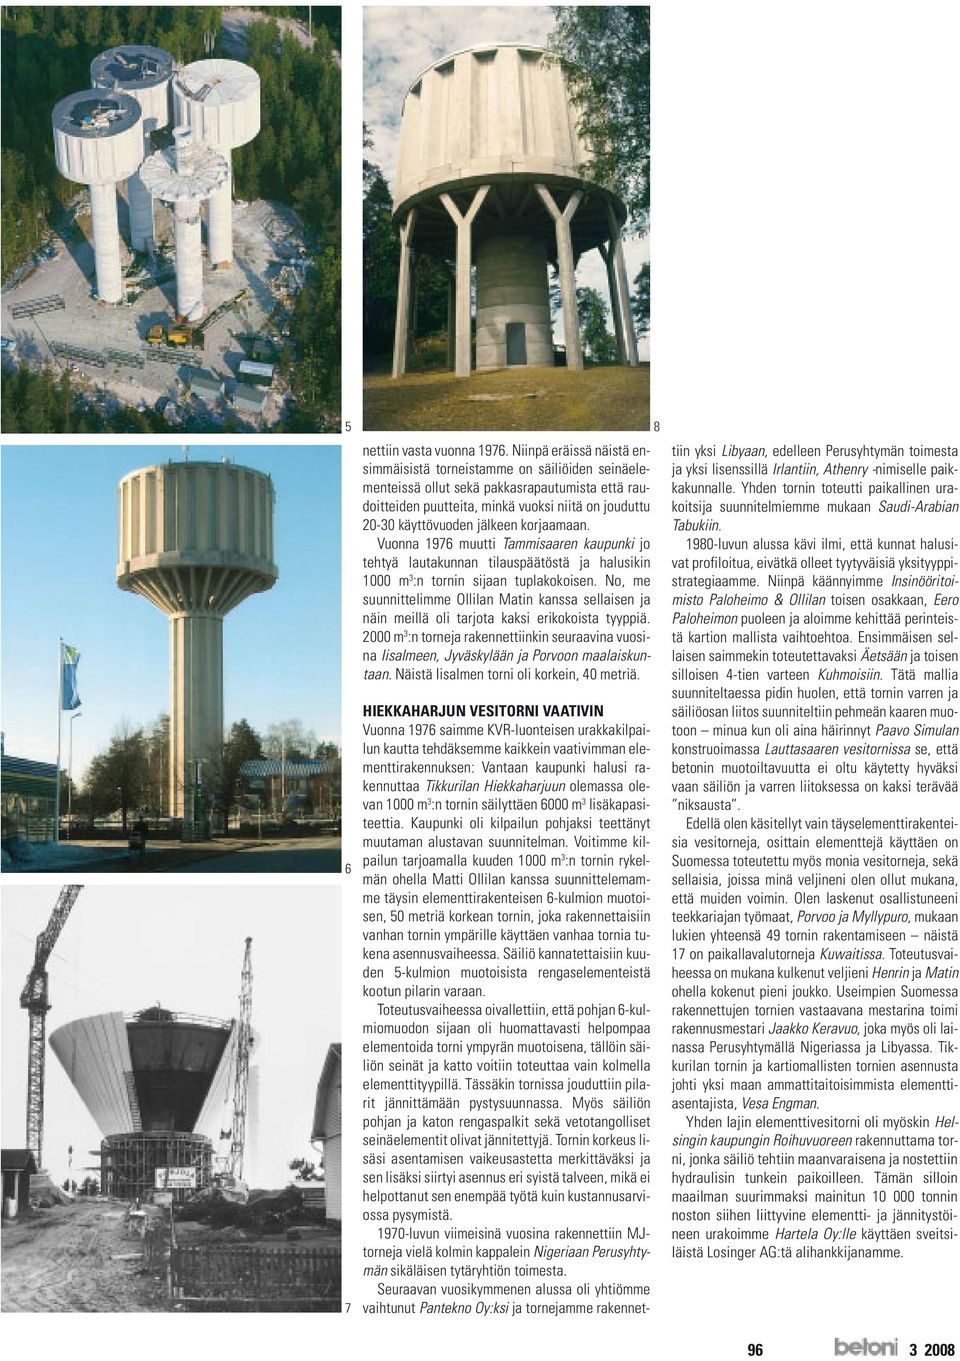 korjaamaan. Vuonna 1976 muutti Tammisaaren kaupunki jo tehtyä lautakunnan tilauspäätöstä ja halusikin 1000 m 3 :n tornin sijaan tuplakokoisen.